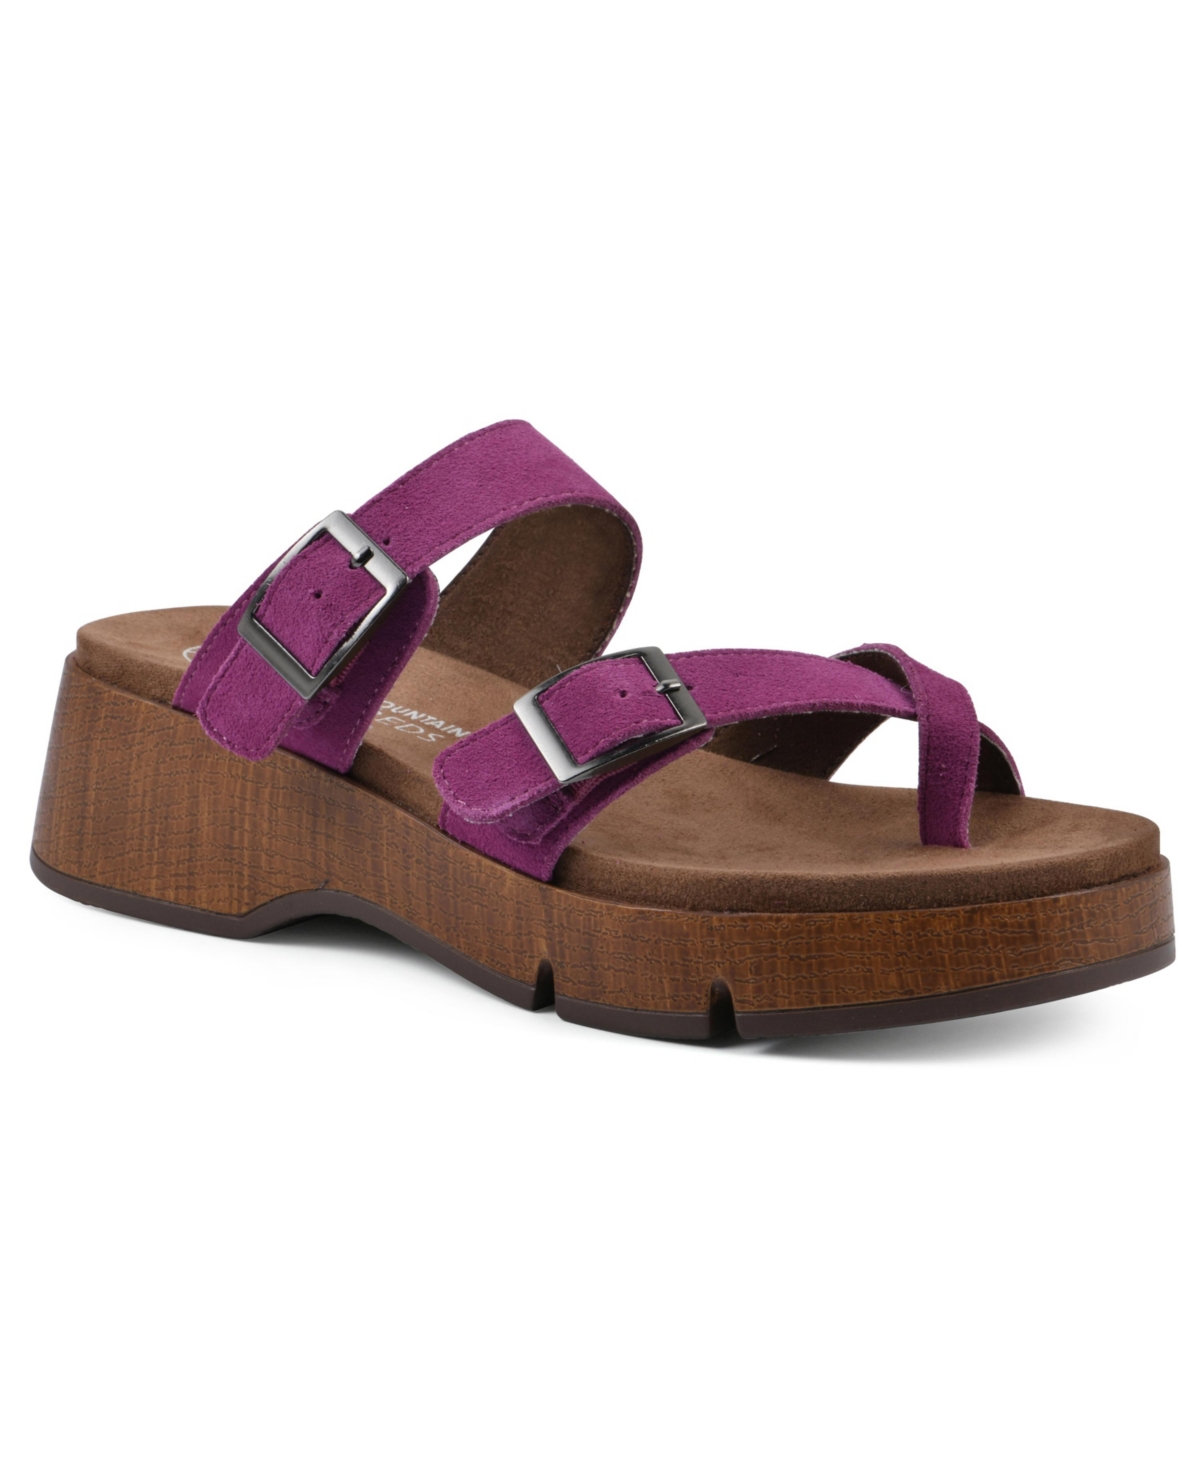 Lefter Platform Sandals - Brown Leather